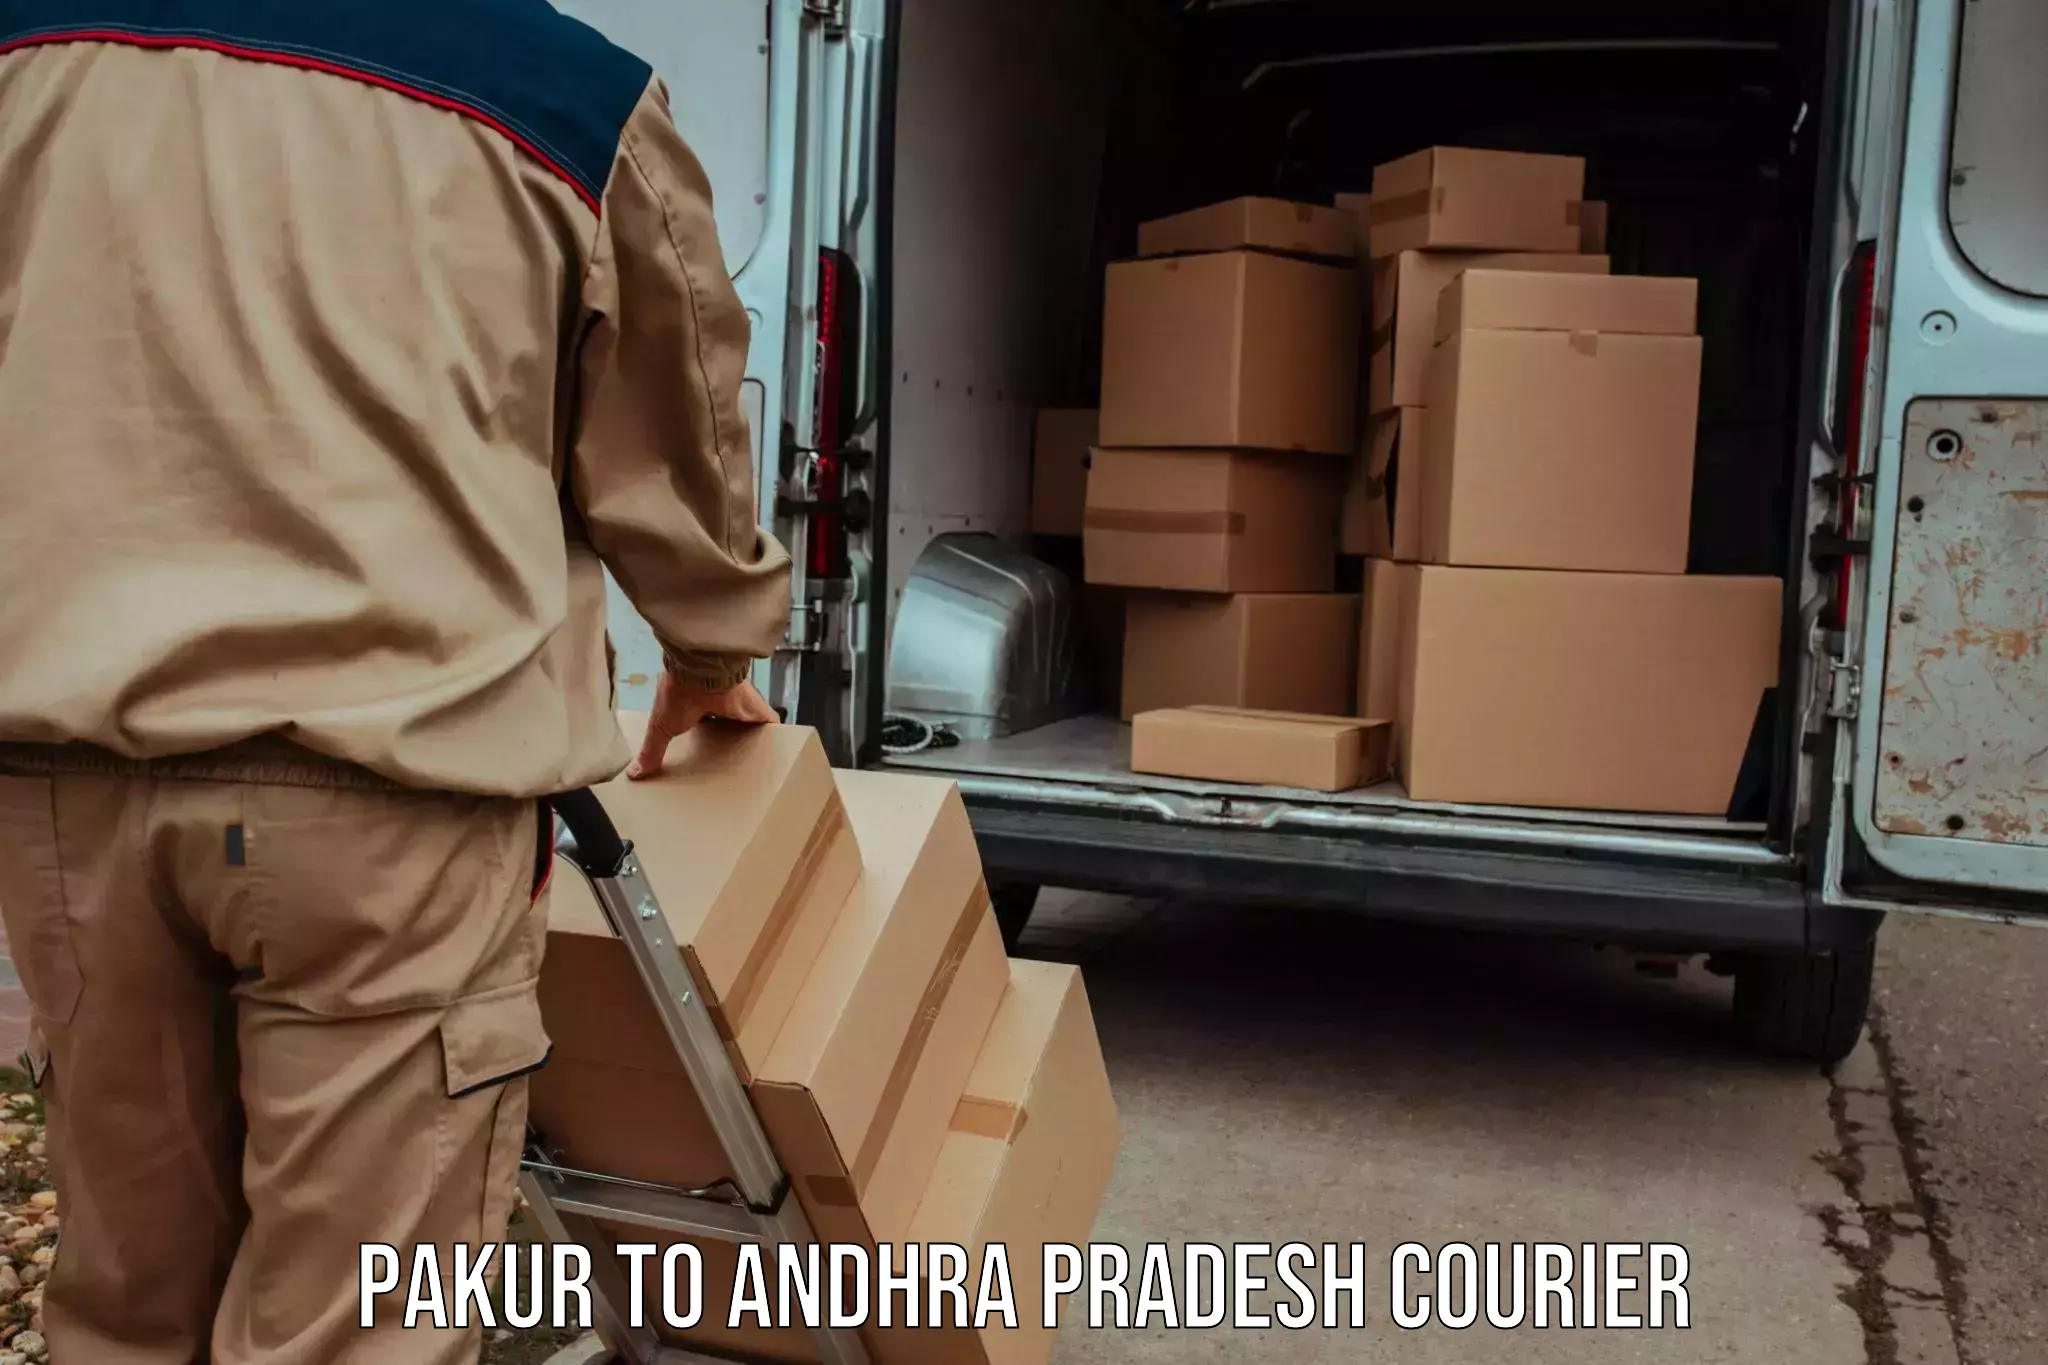 International courier networks Pakur to Udayagiri